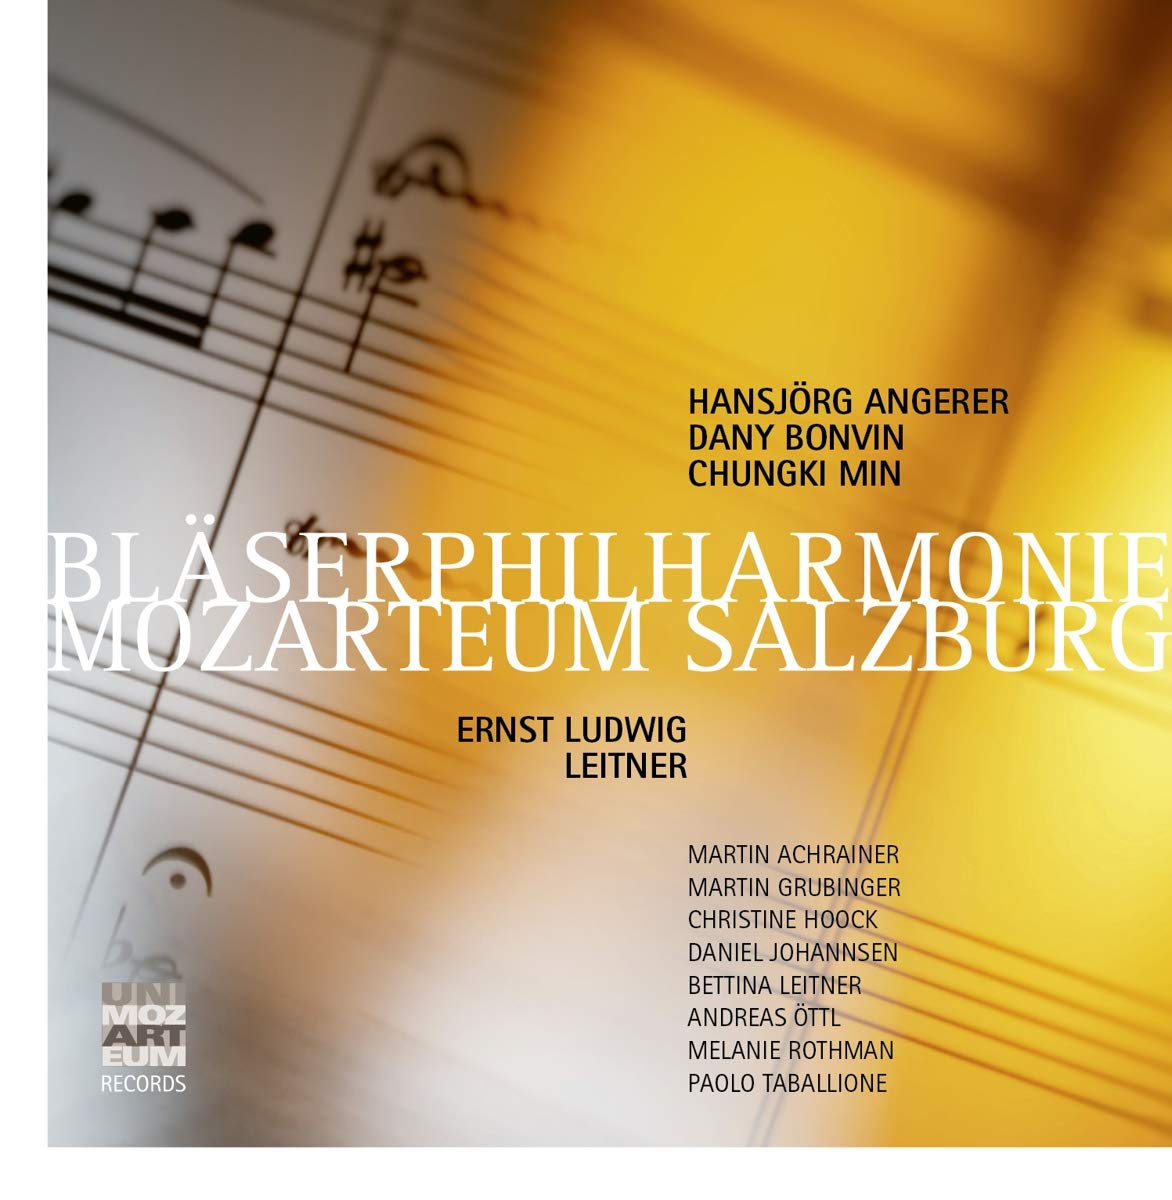 Audio Cd Ernst Ludwig Leitner - Blaserphilharmonie Mozarteum (6 Cd) NUOVO SIGILLATO, EDIZIONE DEL 10/02/2021 SUBITO DISPONIBILE